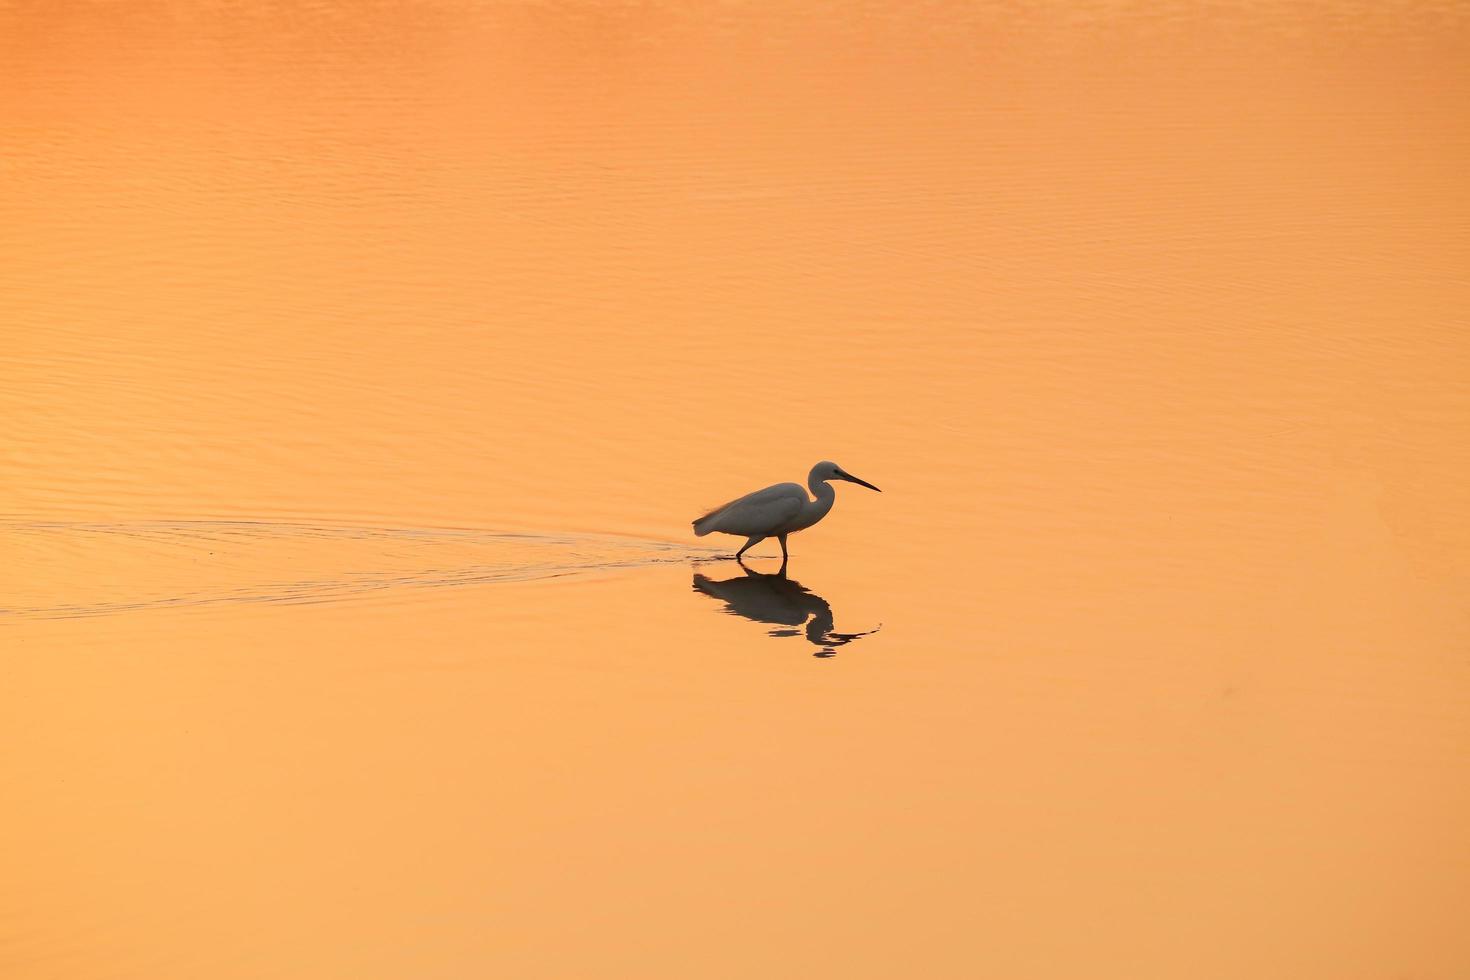 oiseau marchant dans l'eau , oiseaux volant , coucher de soleil sur le lac photo